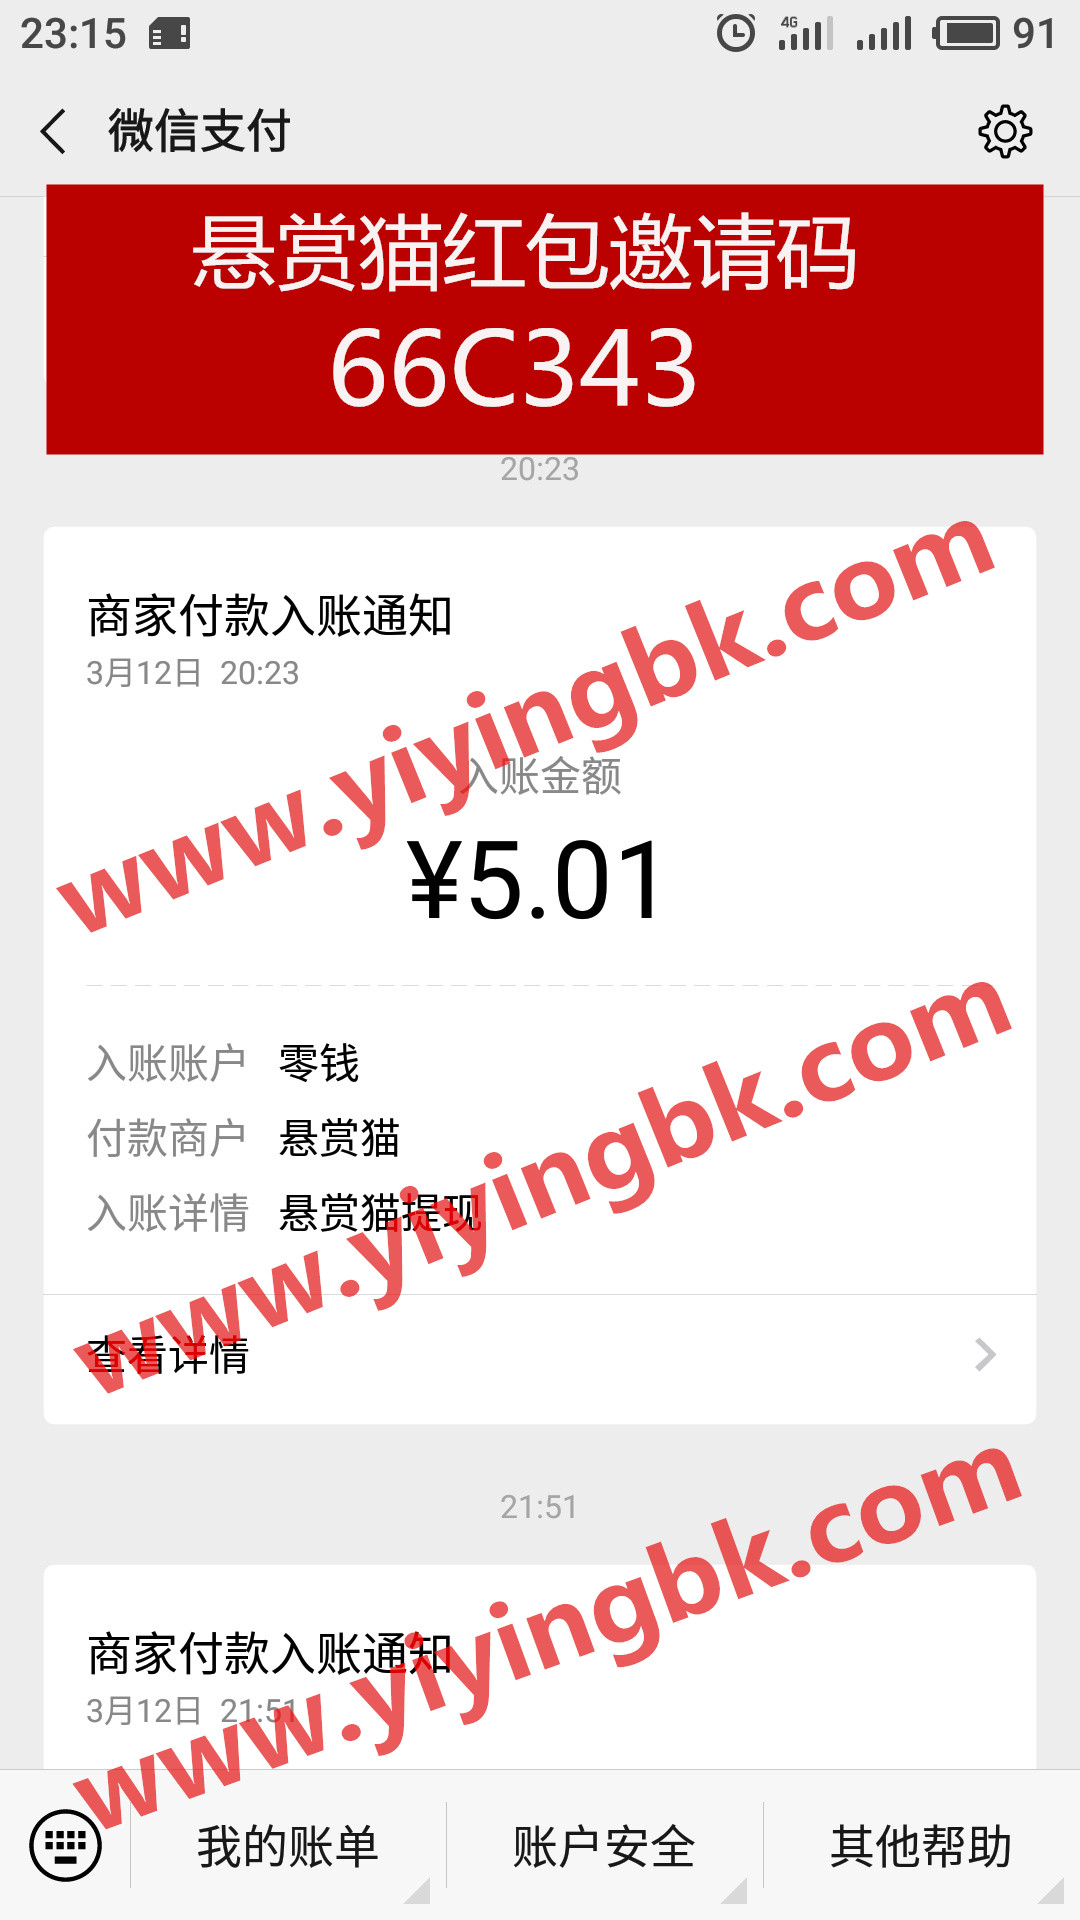 悬赏猫微信提现5.01元支付秒到账。www.yiyingbk.com